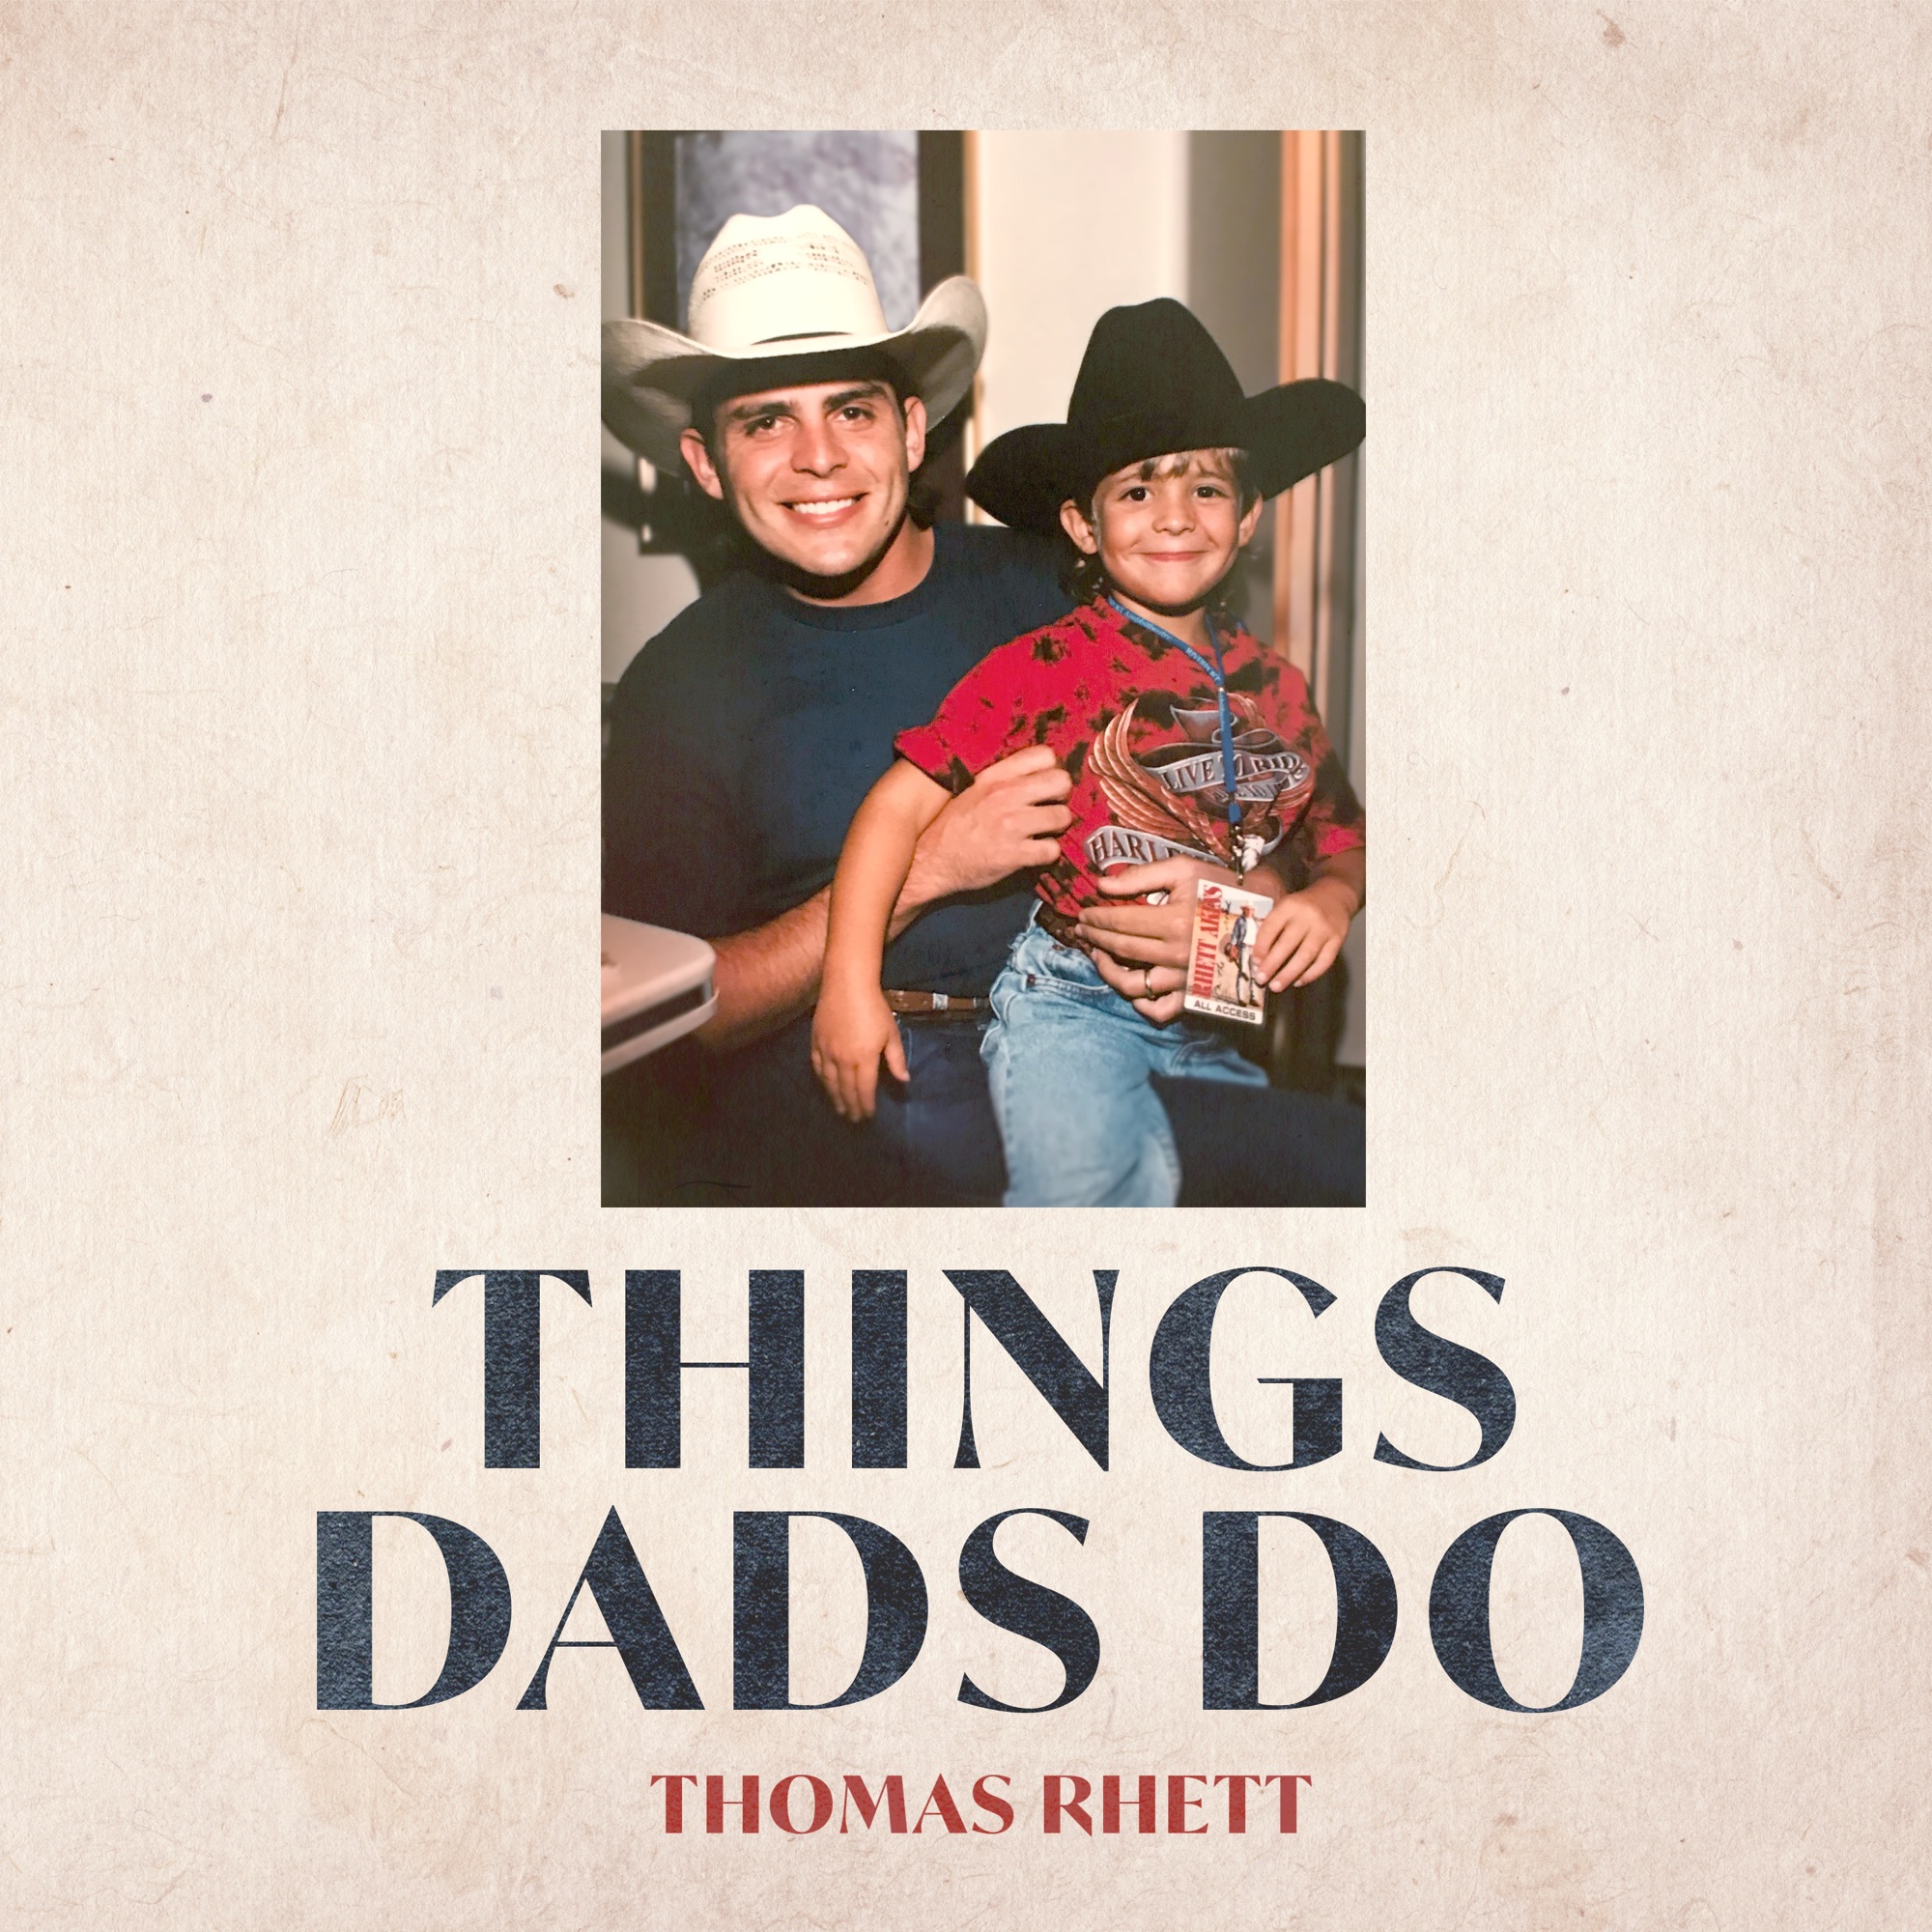 Thomas Rhett - Things Dads Do - Single